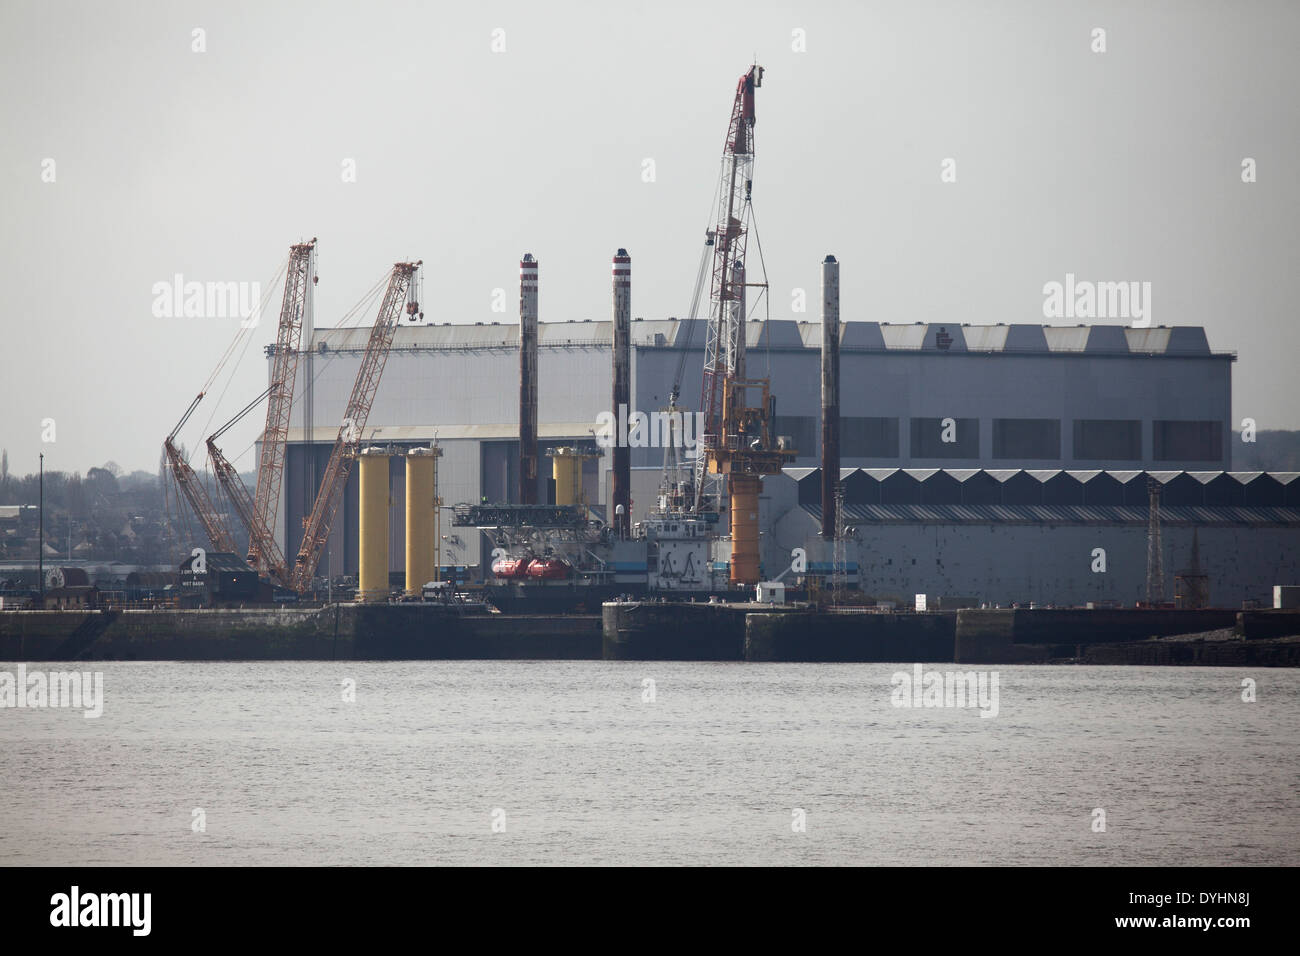 Le chantier naval Cammell Laird à Birkenhead, Royaume-Uni. Banque D'Images